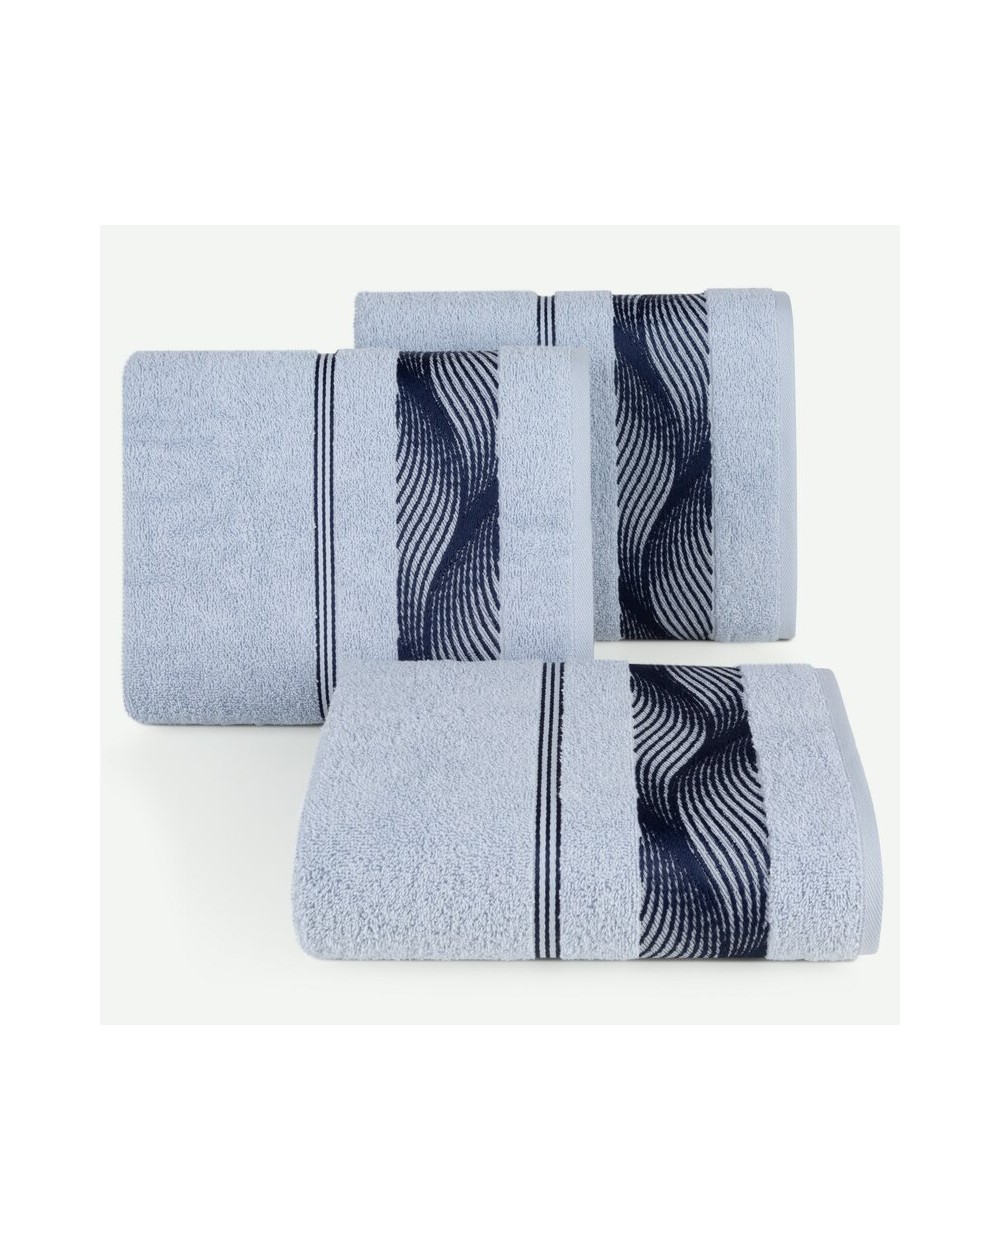 Ręcznik bawełna 70x140 Sylwia 2 niebieski Eurofirany 